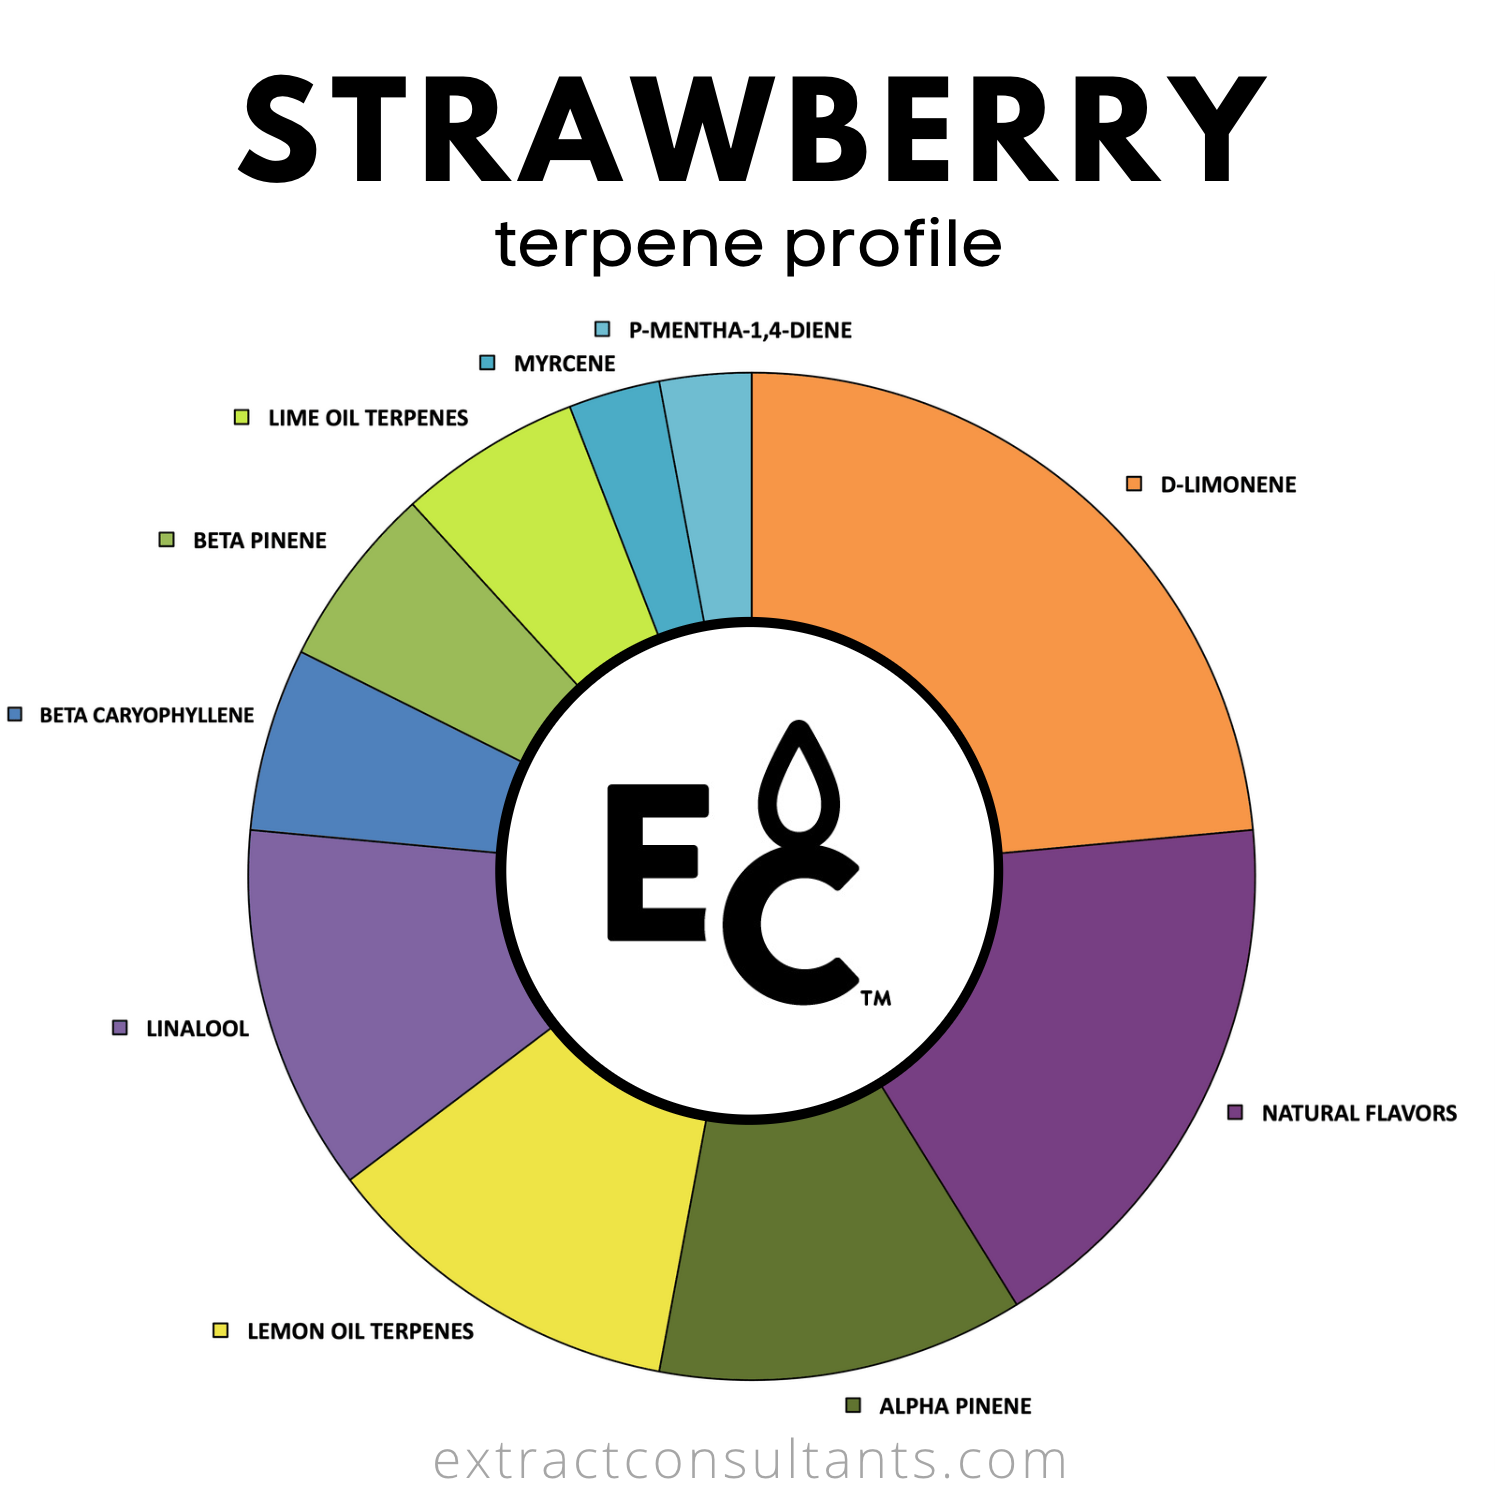 Strawberry terpene profile